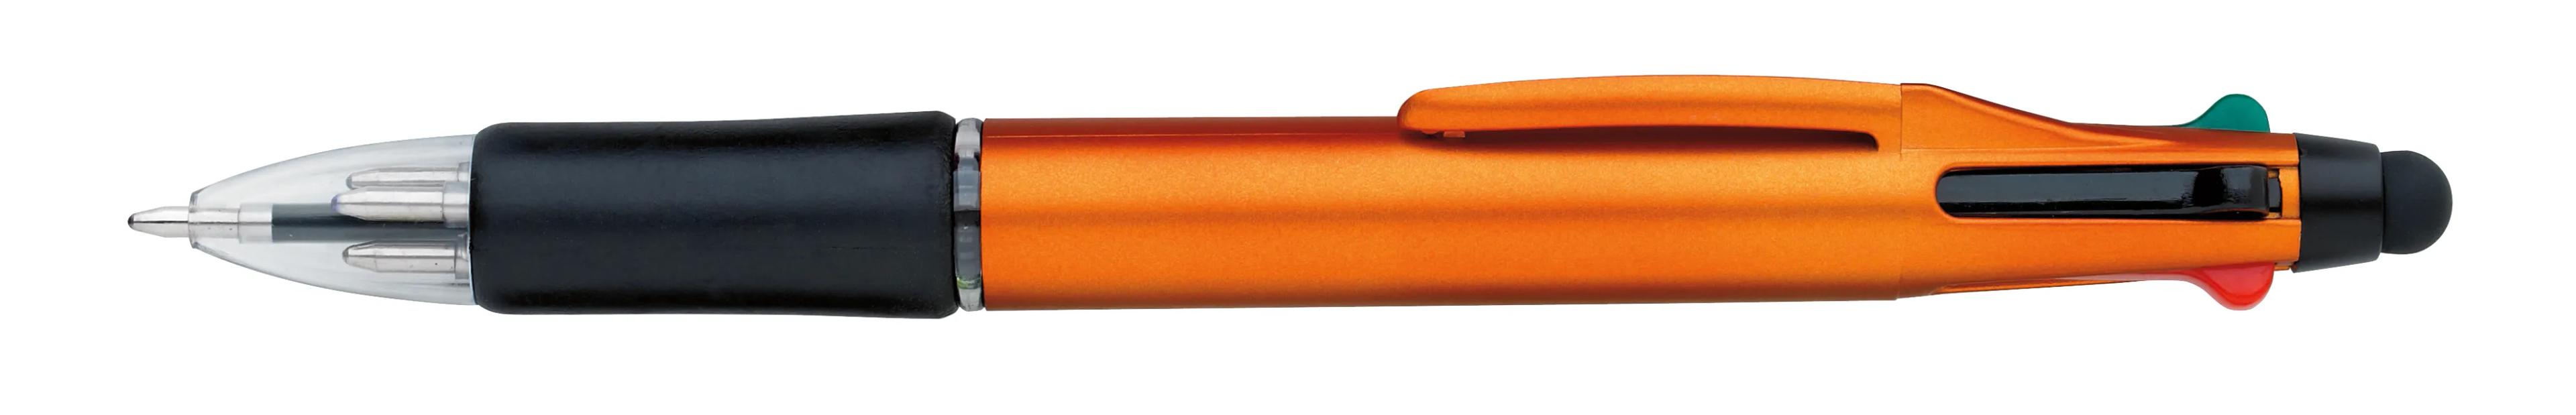 Orbitor Metallic Stylus Pen 10 of 56